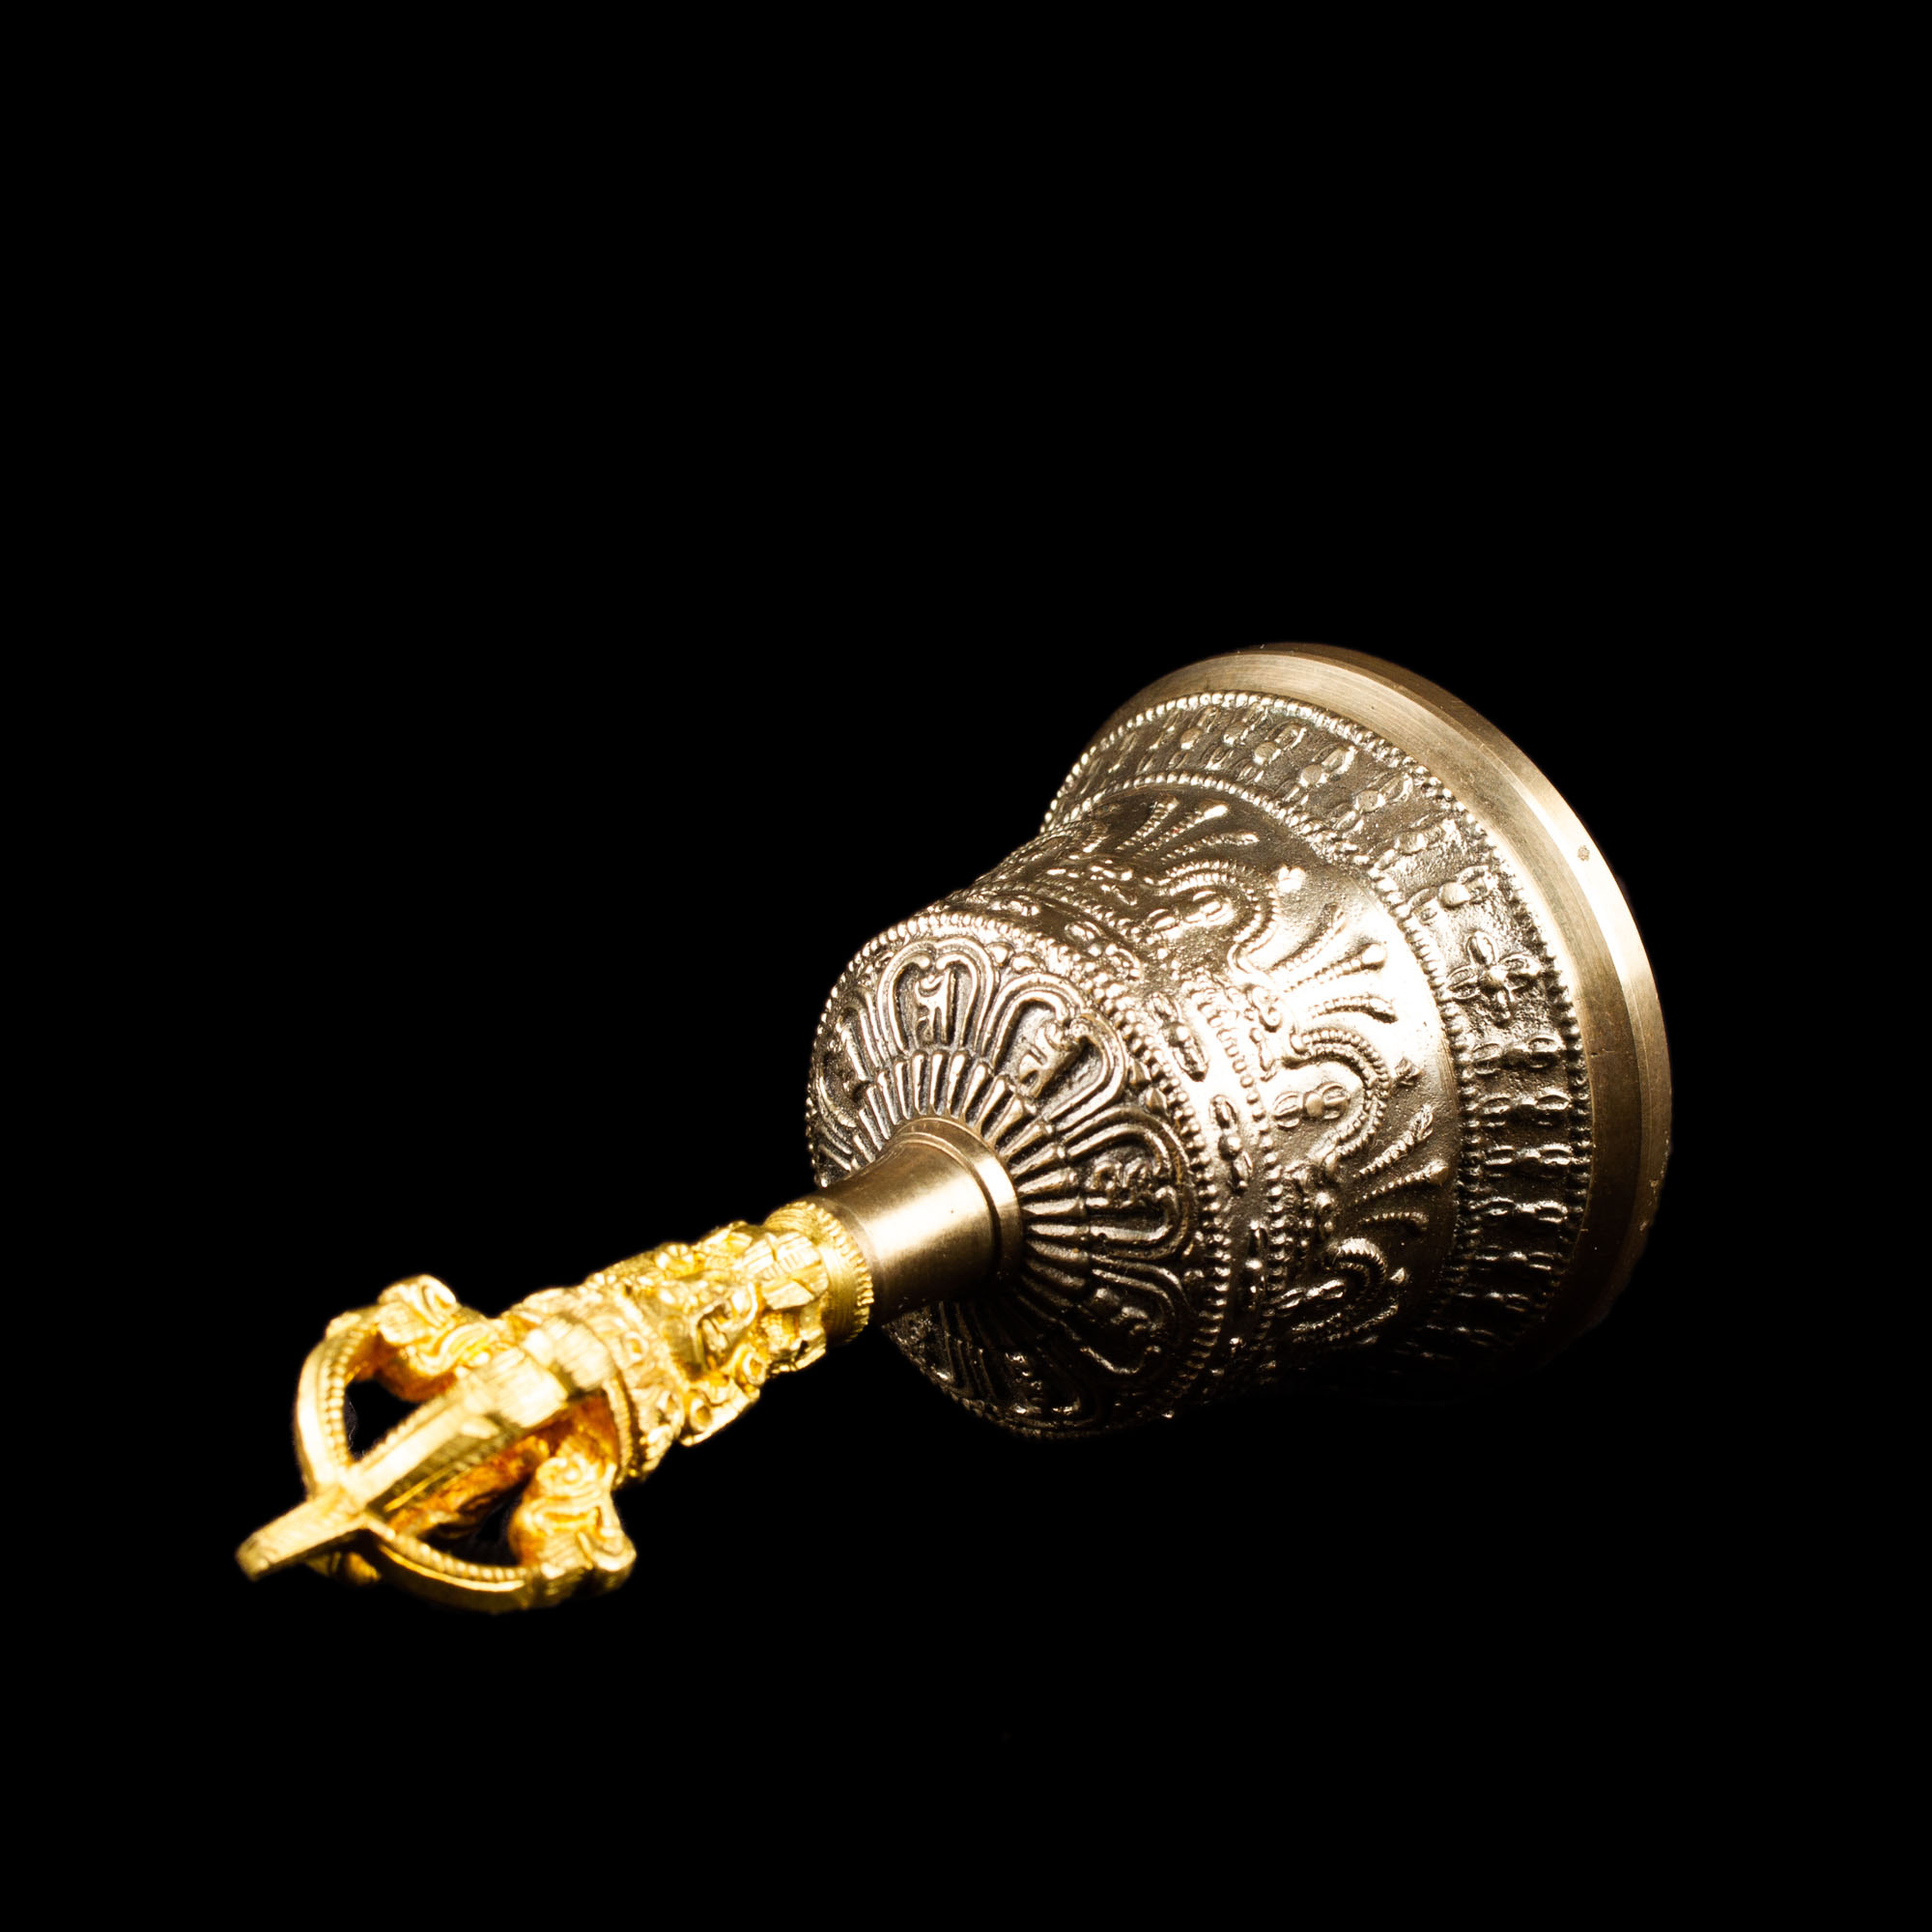 Колокольчик с ваджрой (серебристый), 12 см, Непал, хорошее качество, 12 см, золотой, серебро